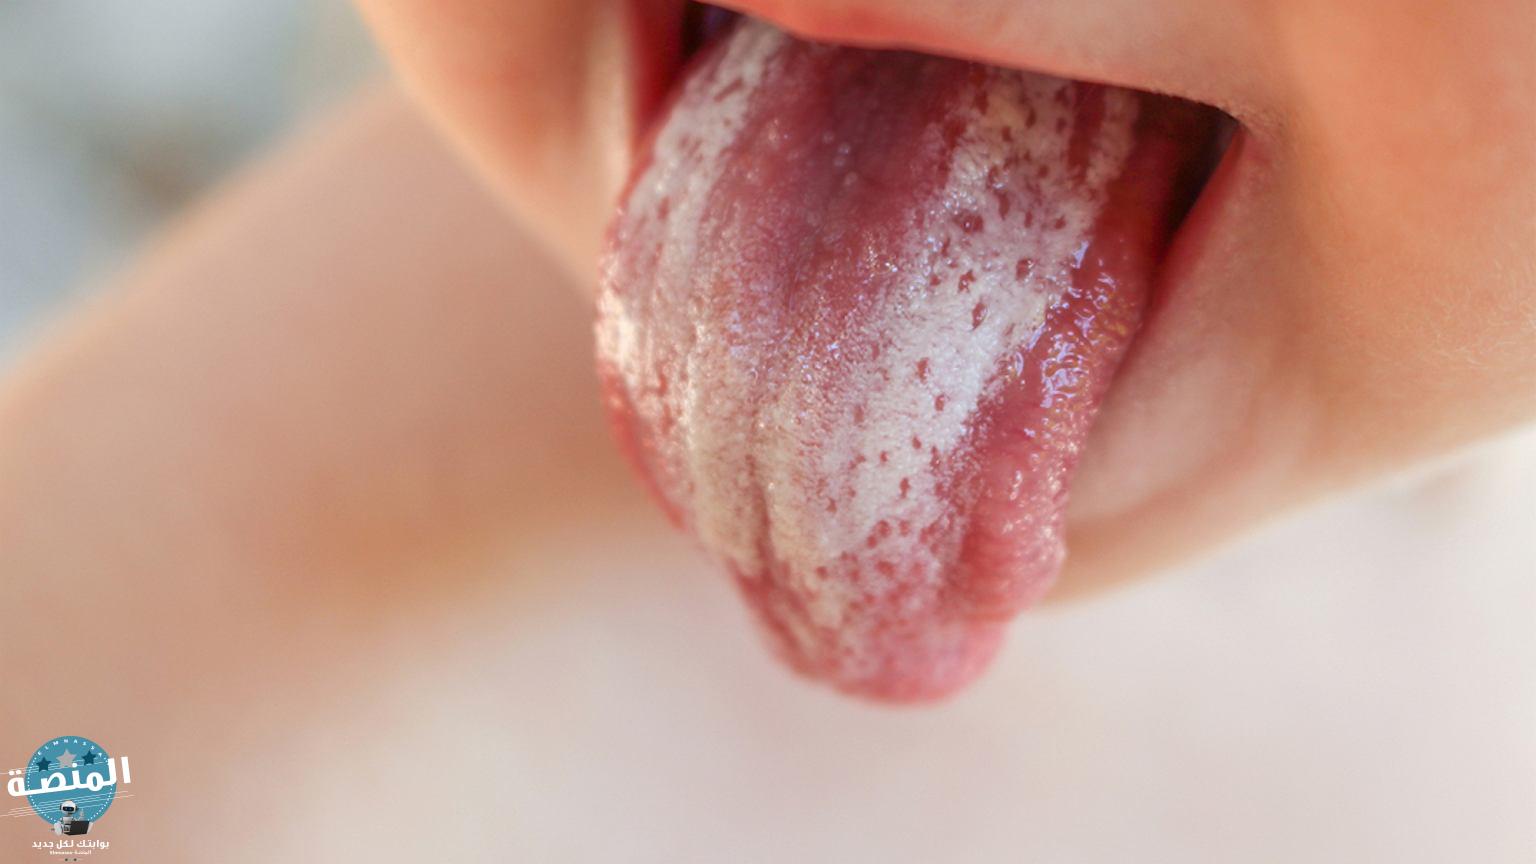 أسباب فطريات الفم وعوامل خطر الإصابة بمرض القلاع